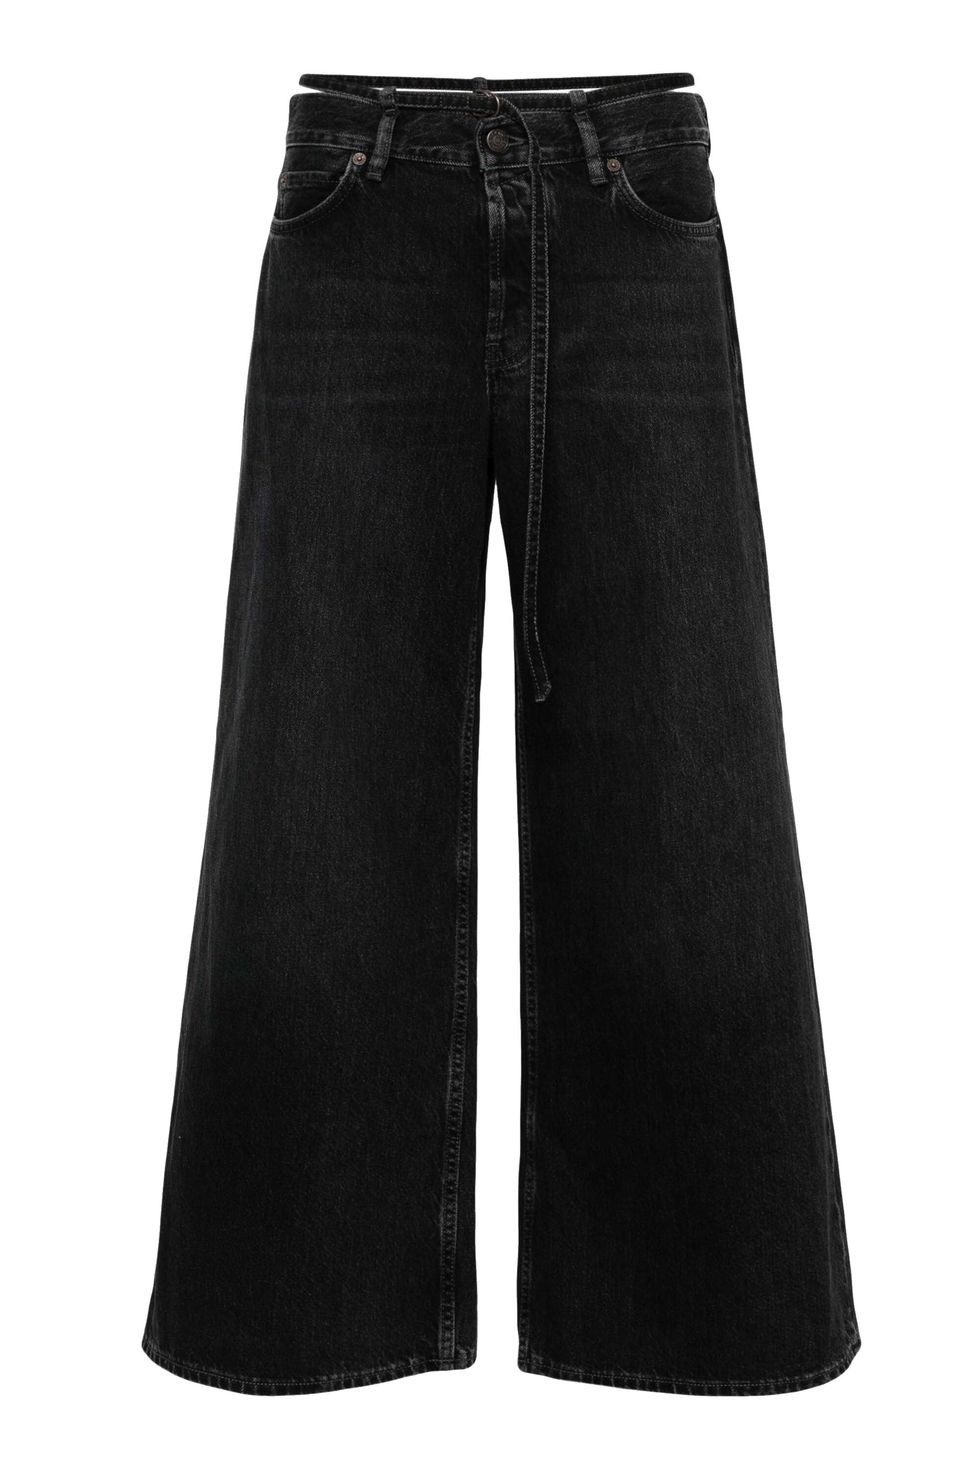 10 celana jeans low-rise yang mudah dikombinasikan